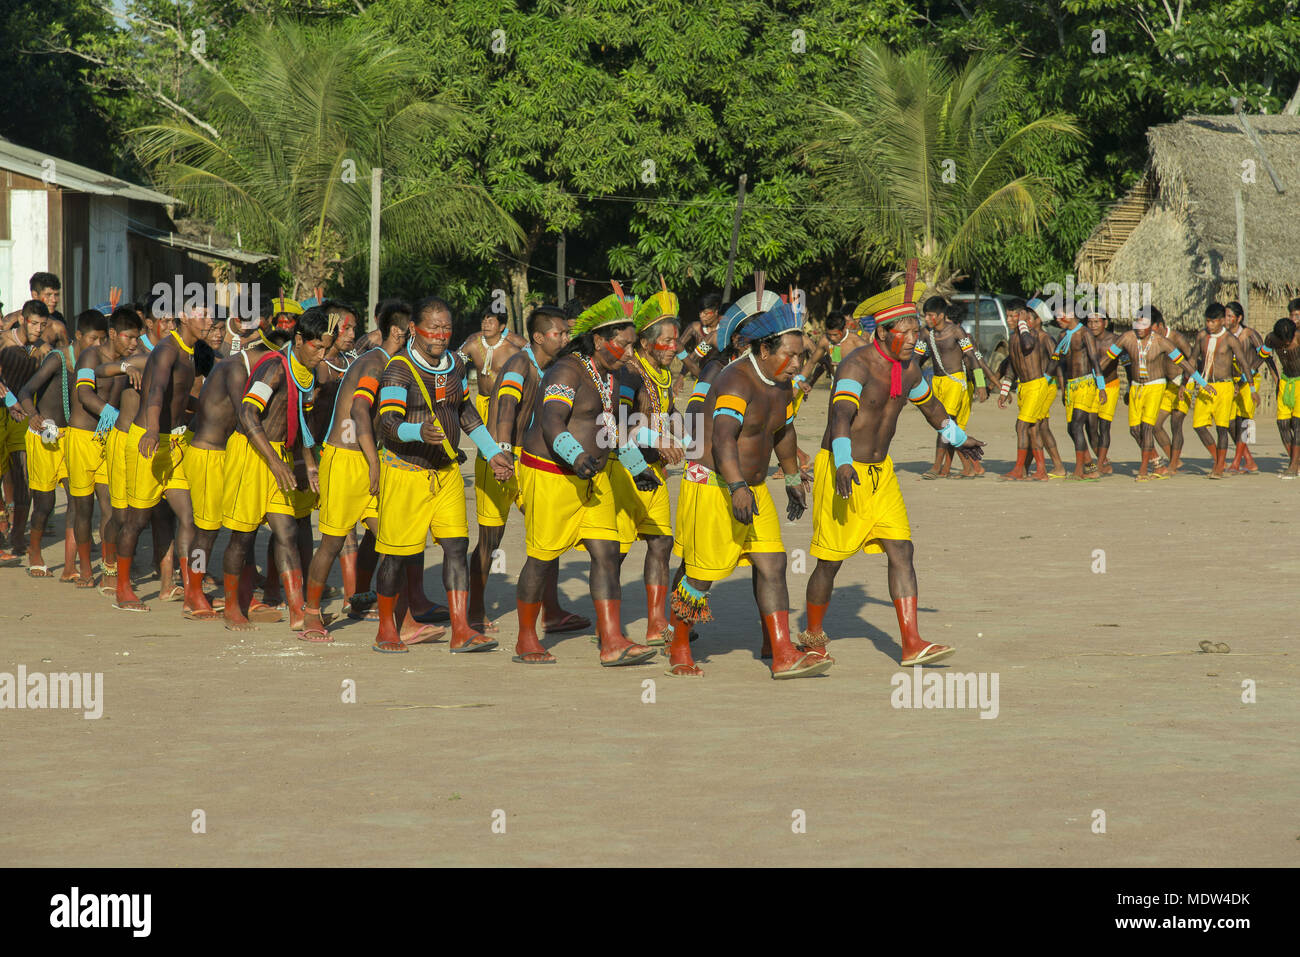 Indios del pueblo kayapó Moikarako participar en el baile de la yuca Foto de stock